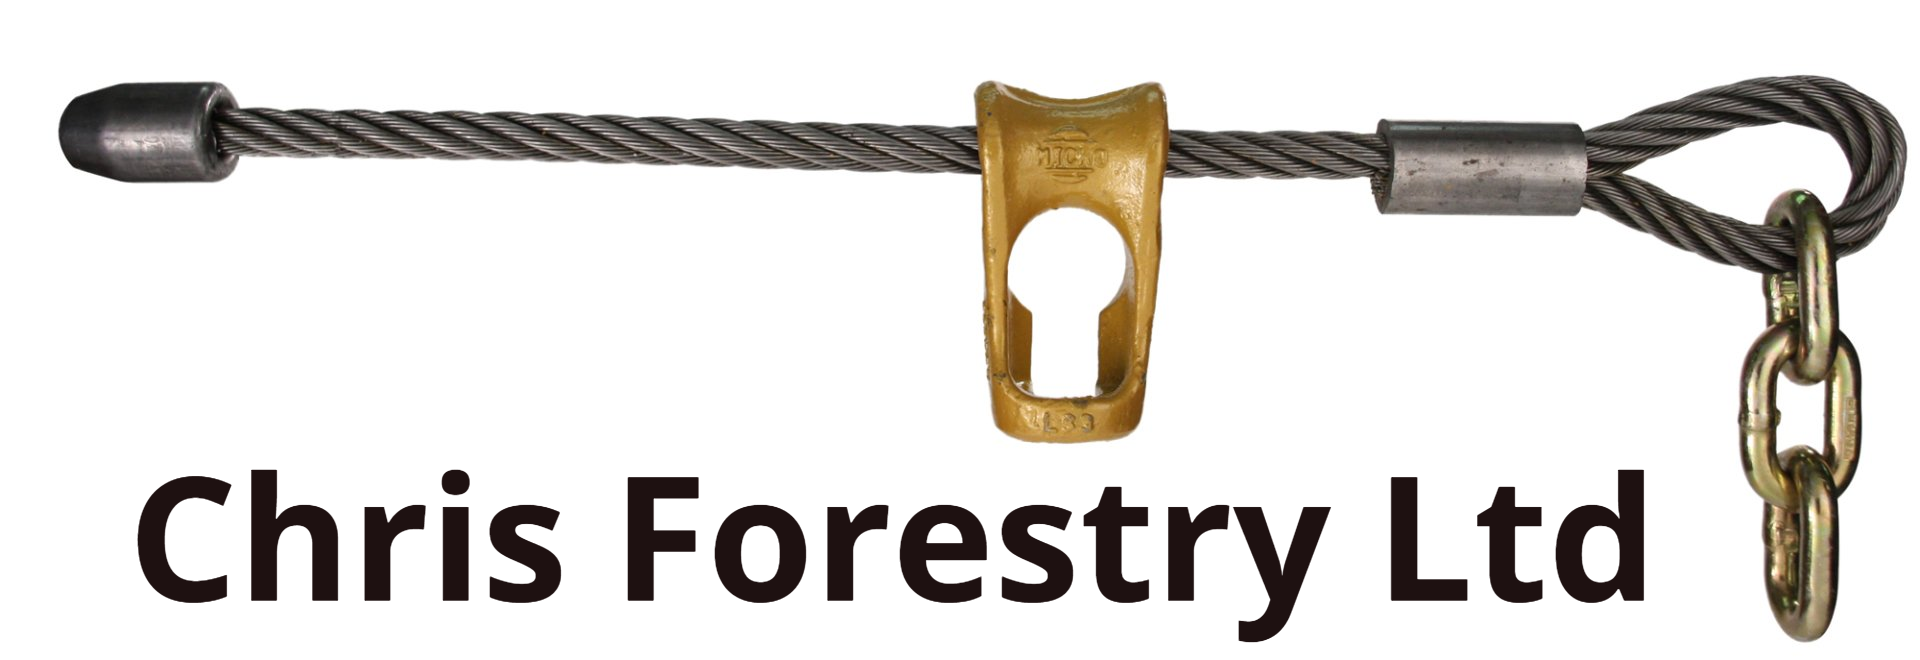 Chris Forestry Ltd